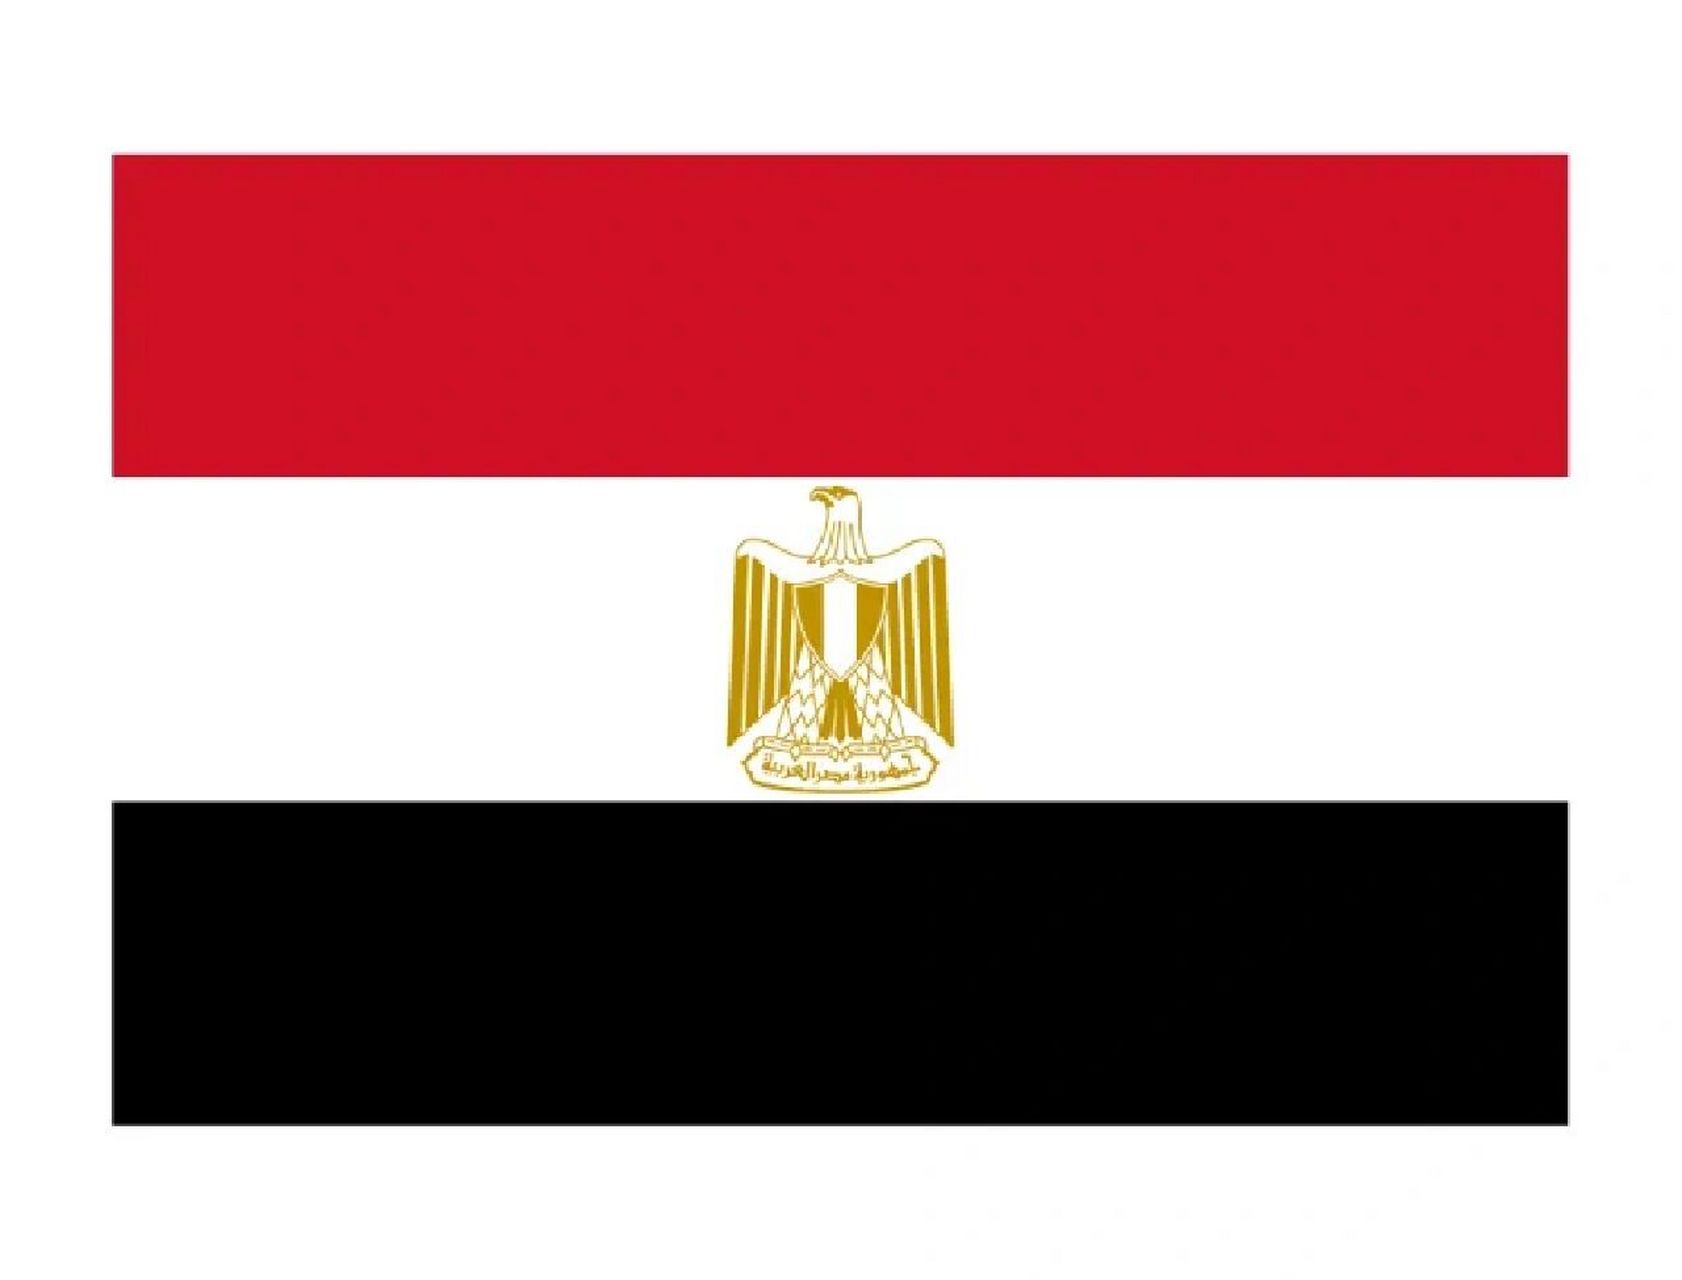 各国国旗意义@埃及 阿拉伯埃及共和国国旗,呈长方形,长宽比例为3:2